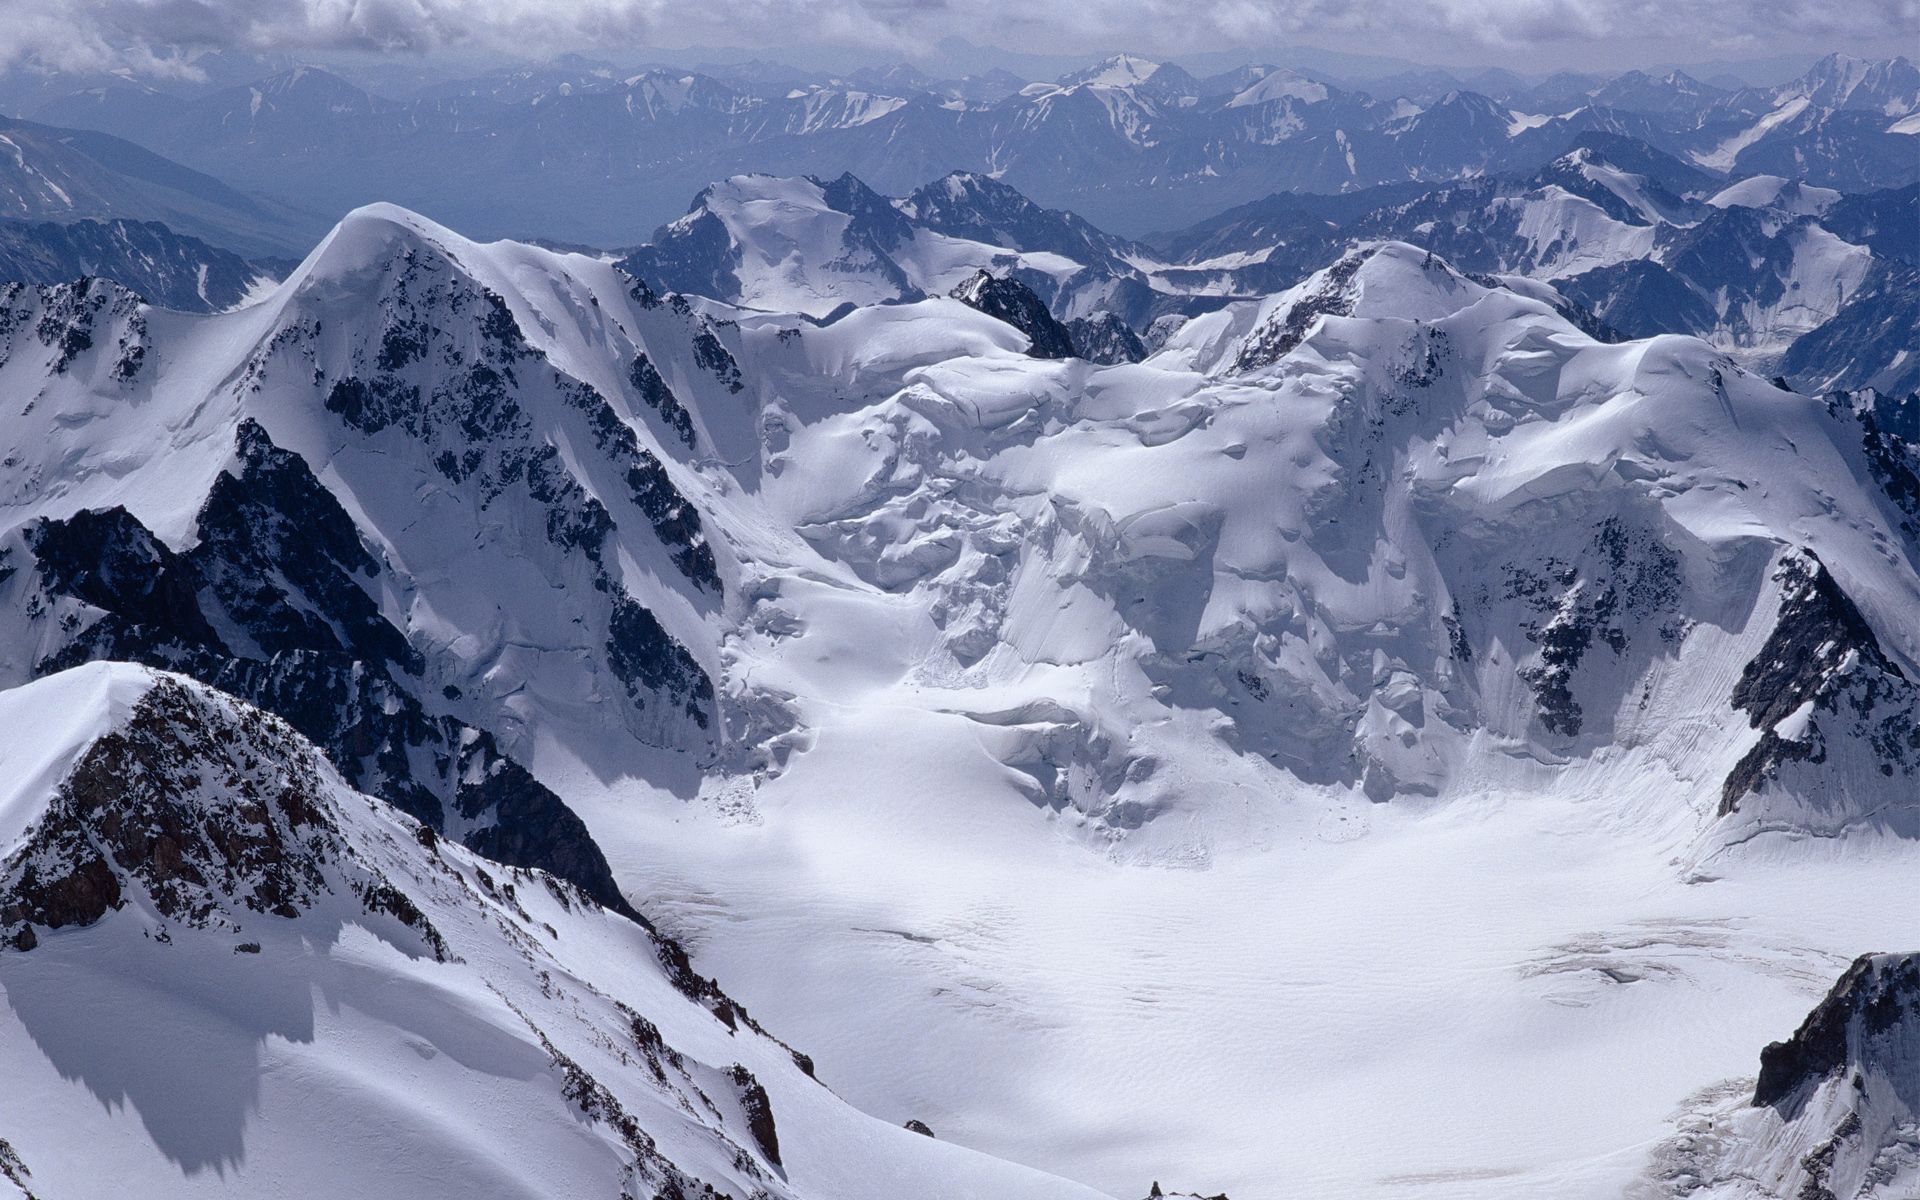 Altai Mountains. Mountain wallpaper, Snowy mountains, Mountains